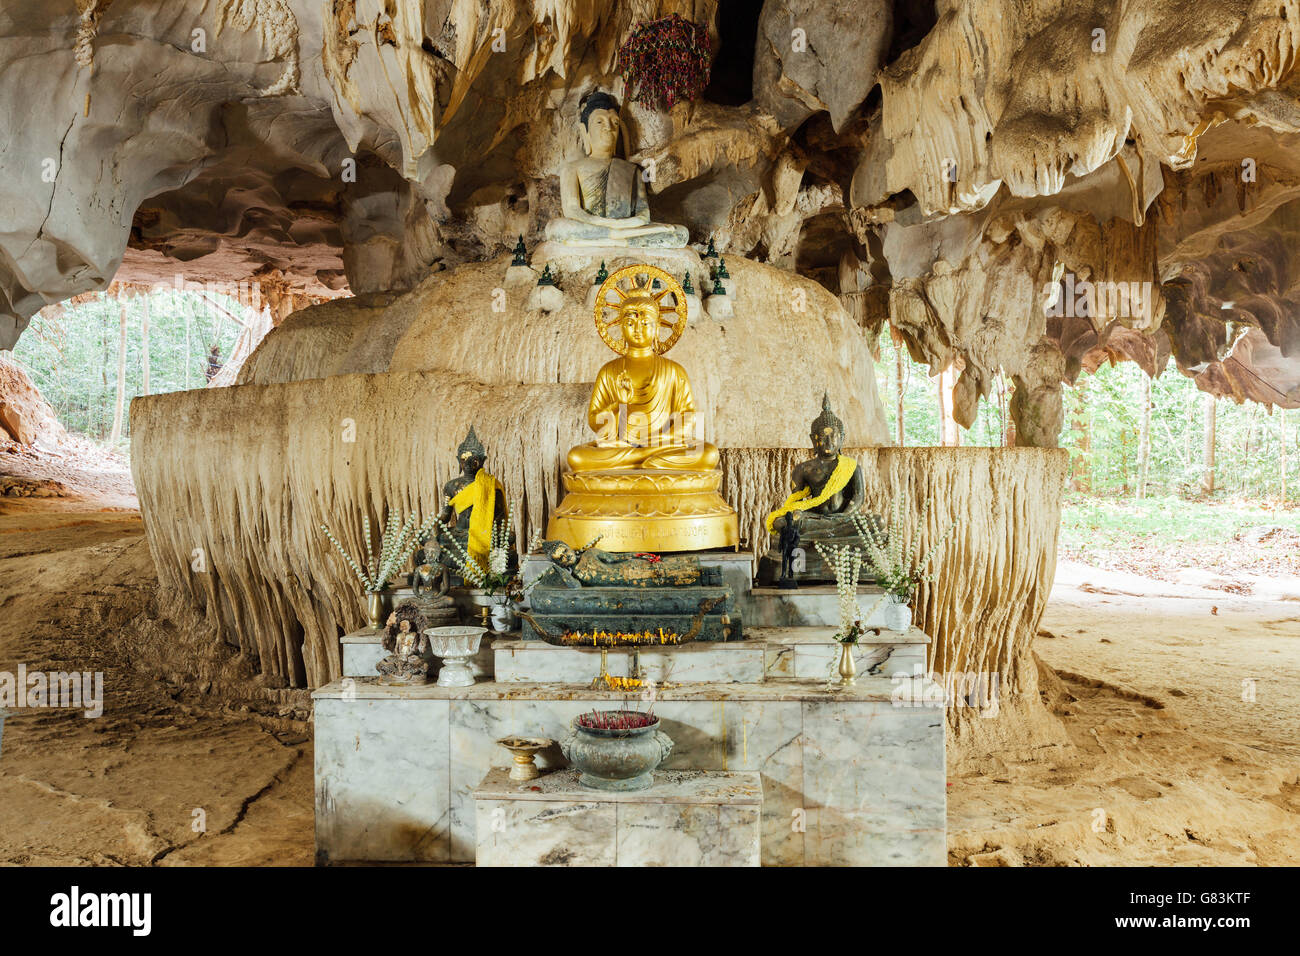 Immagine del Buddha nella grotta. Tiger tempio nella grotta, Krabi, Thailandia. Foto Stock